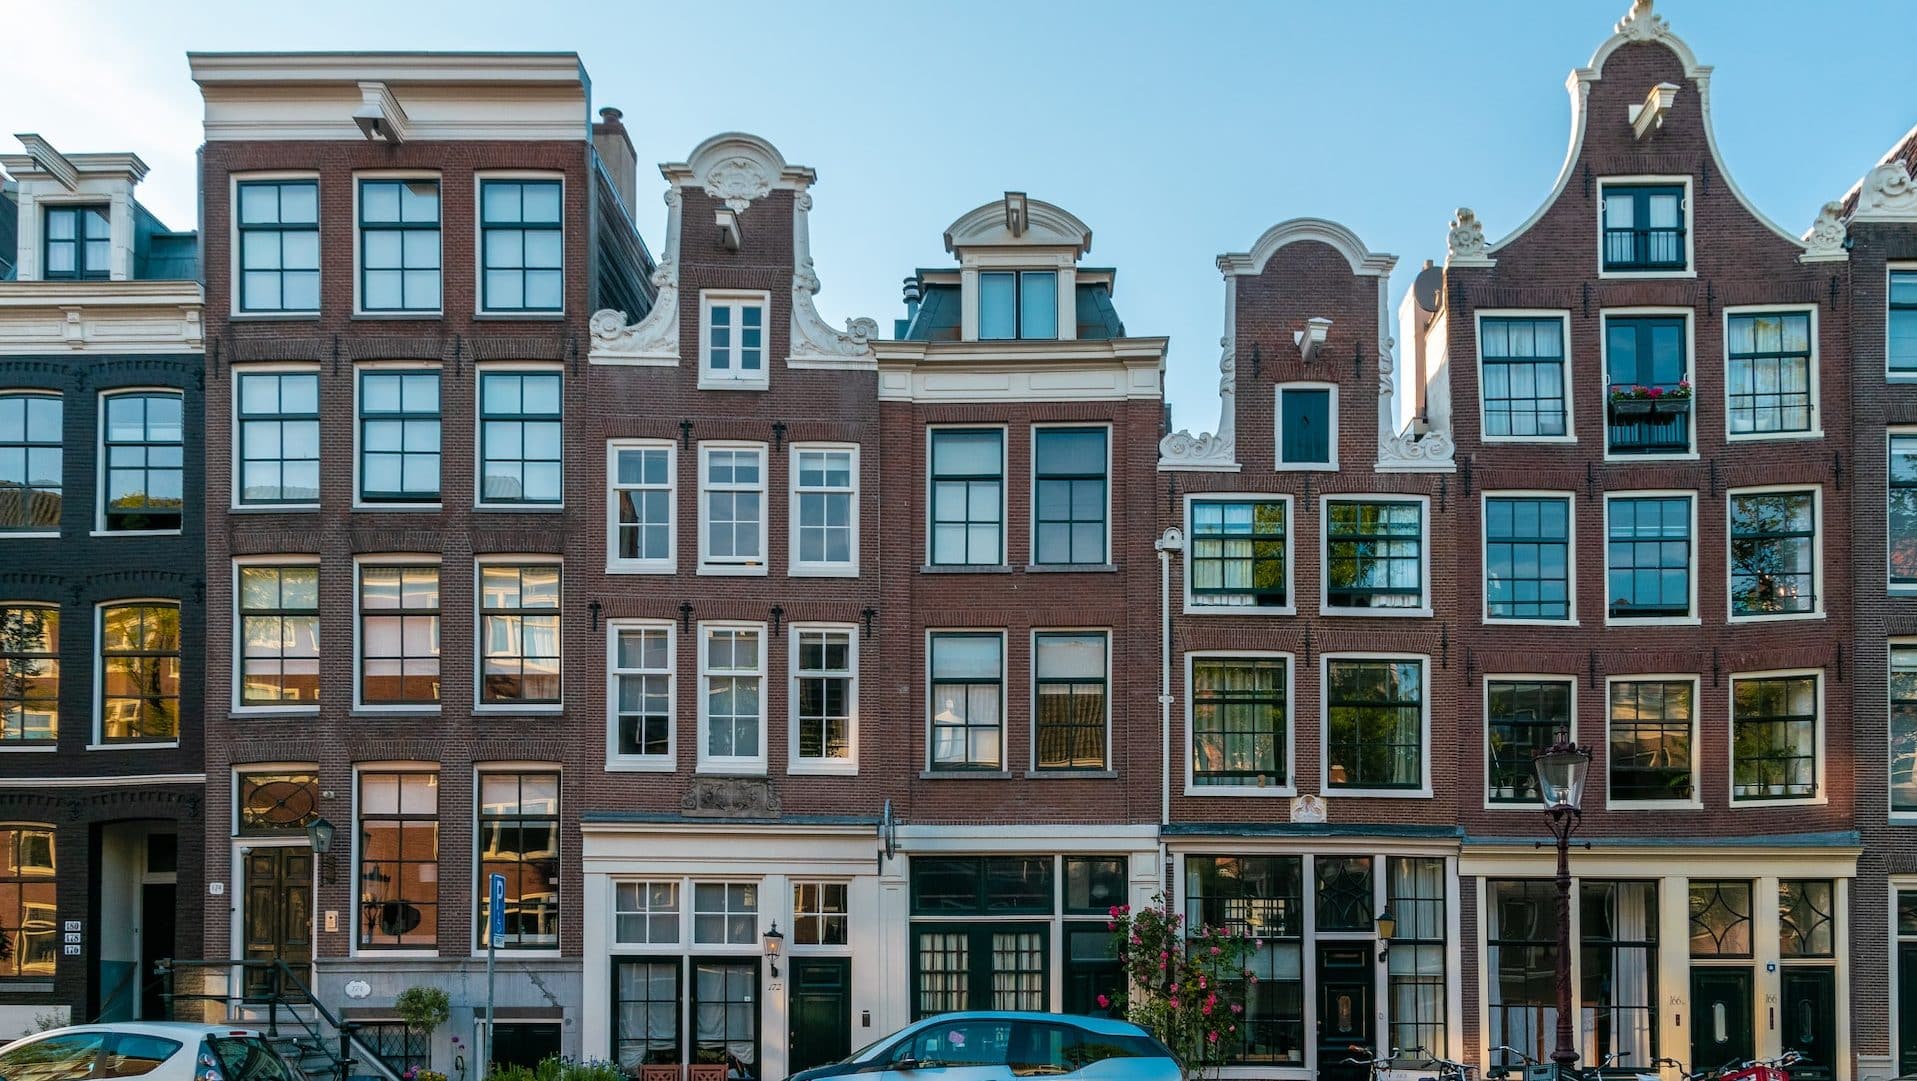 Arquitectura típica d'estil holandès al barri de Jordaan